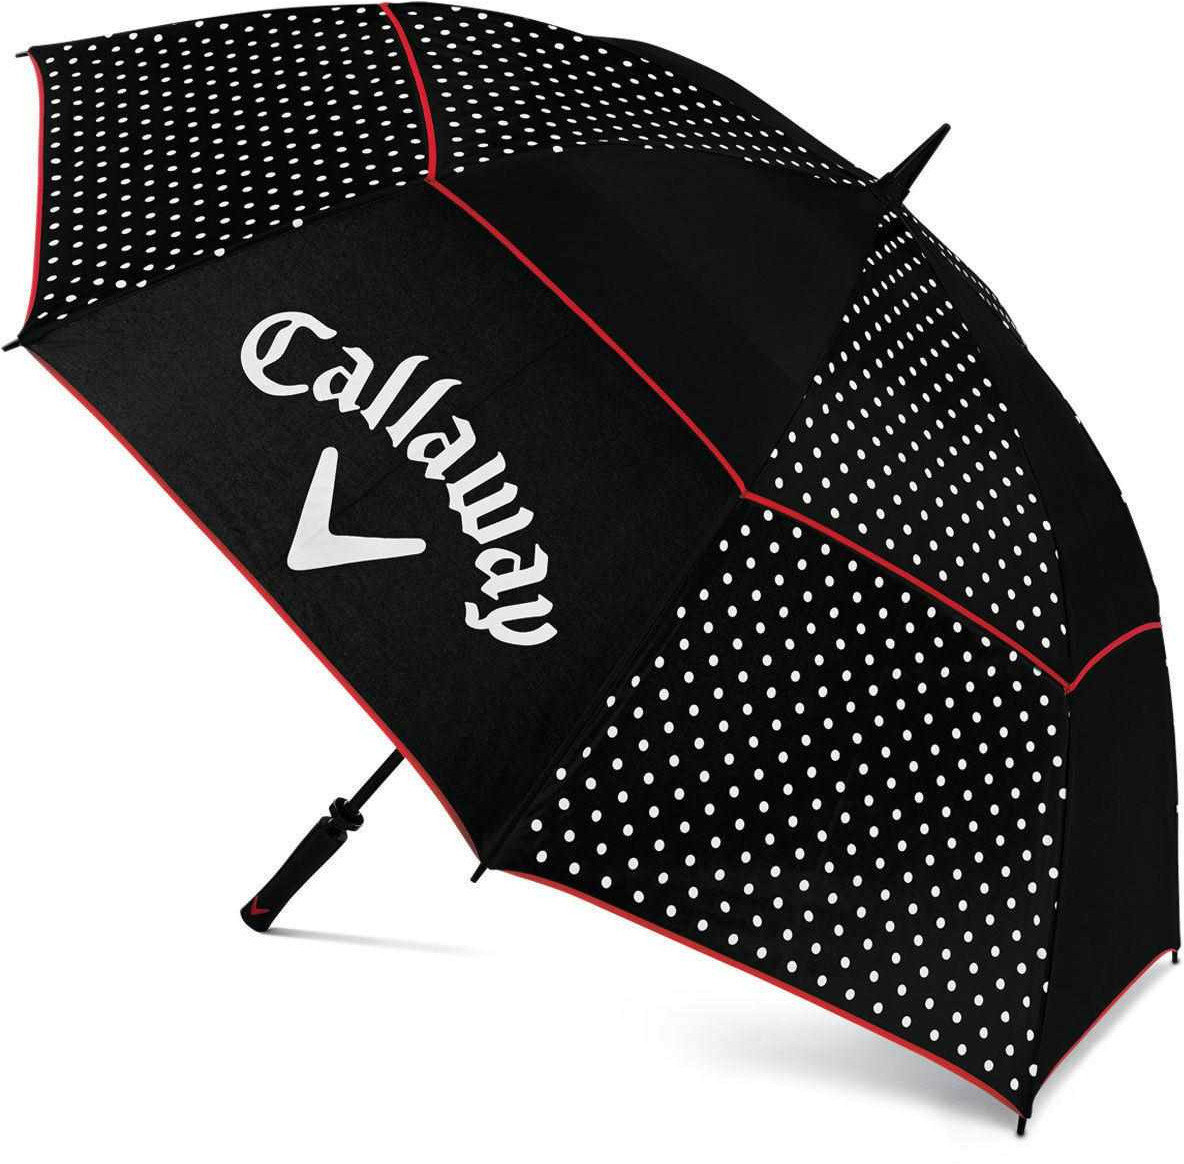 Ομπρέλα Callaway Umbrella Blk/Wht